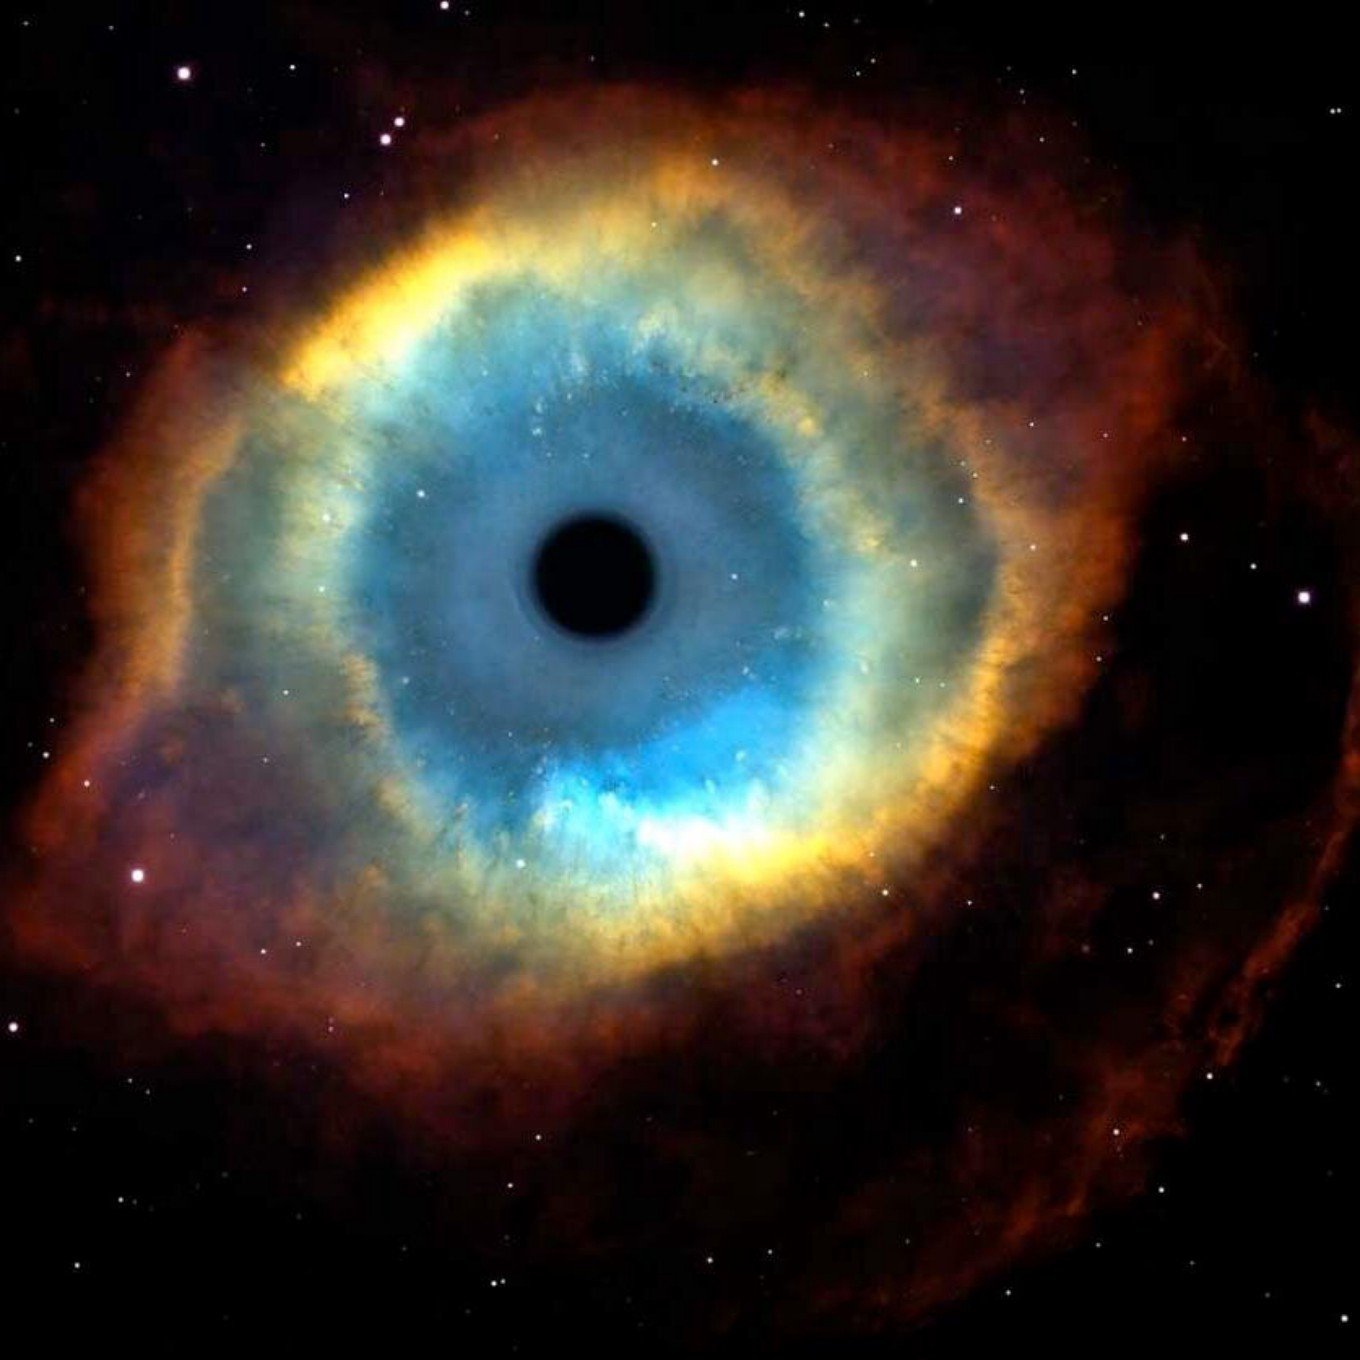 Глаз бога какую информацию дает. Планетарная туманность кошачий глаз. Планетарная туманность NGC 6543 ("кошачий глаз"). Галактика кошачий глаз. Кошачий глаз Небула.